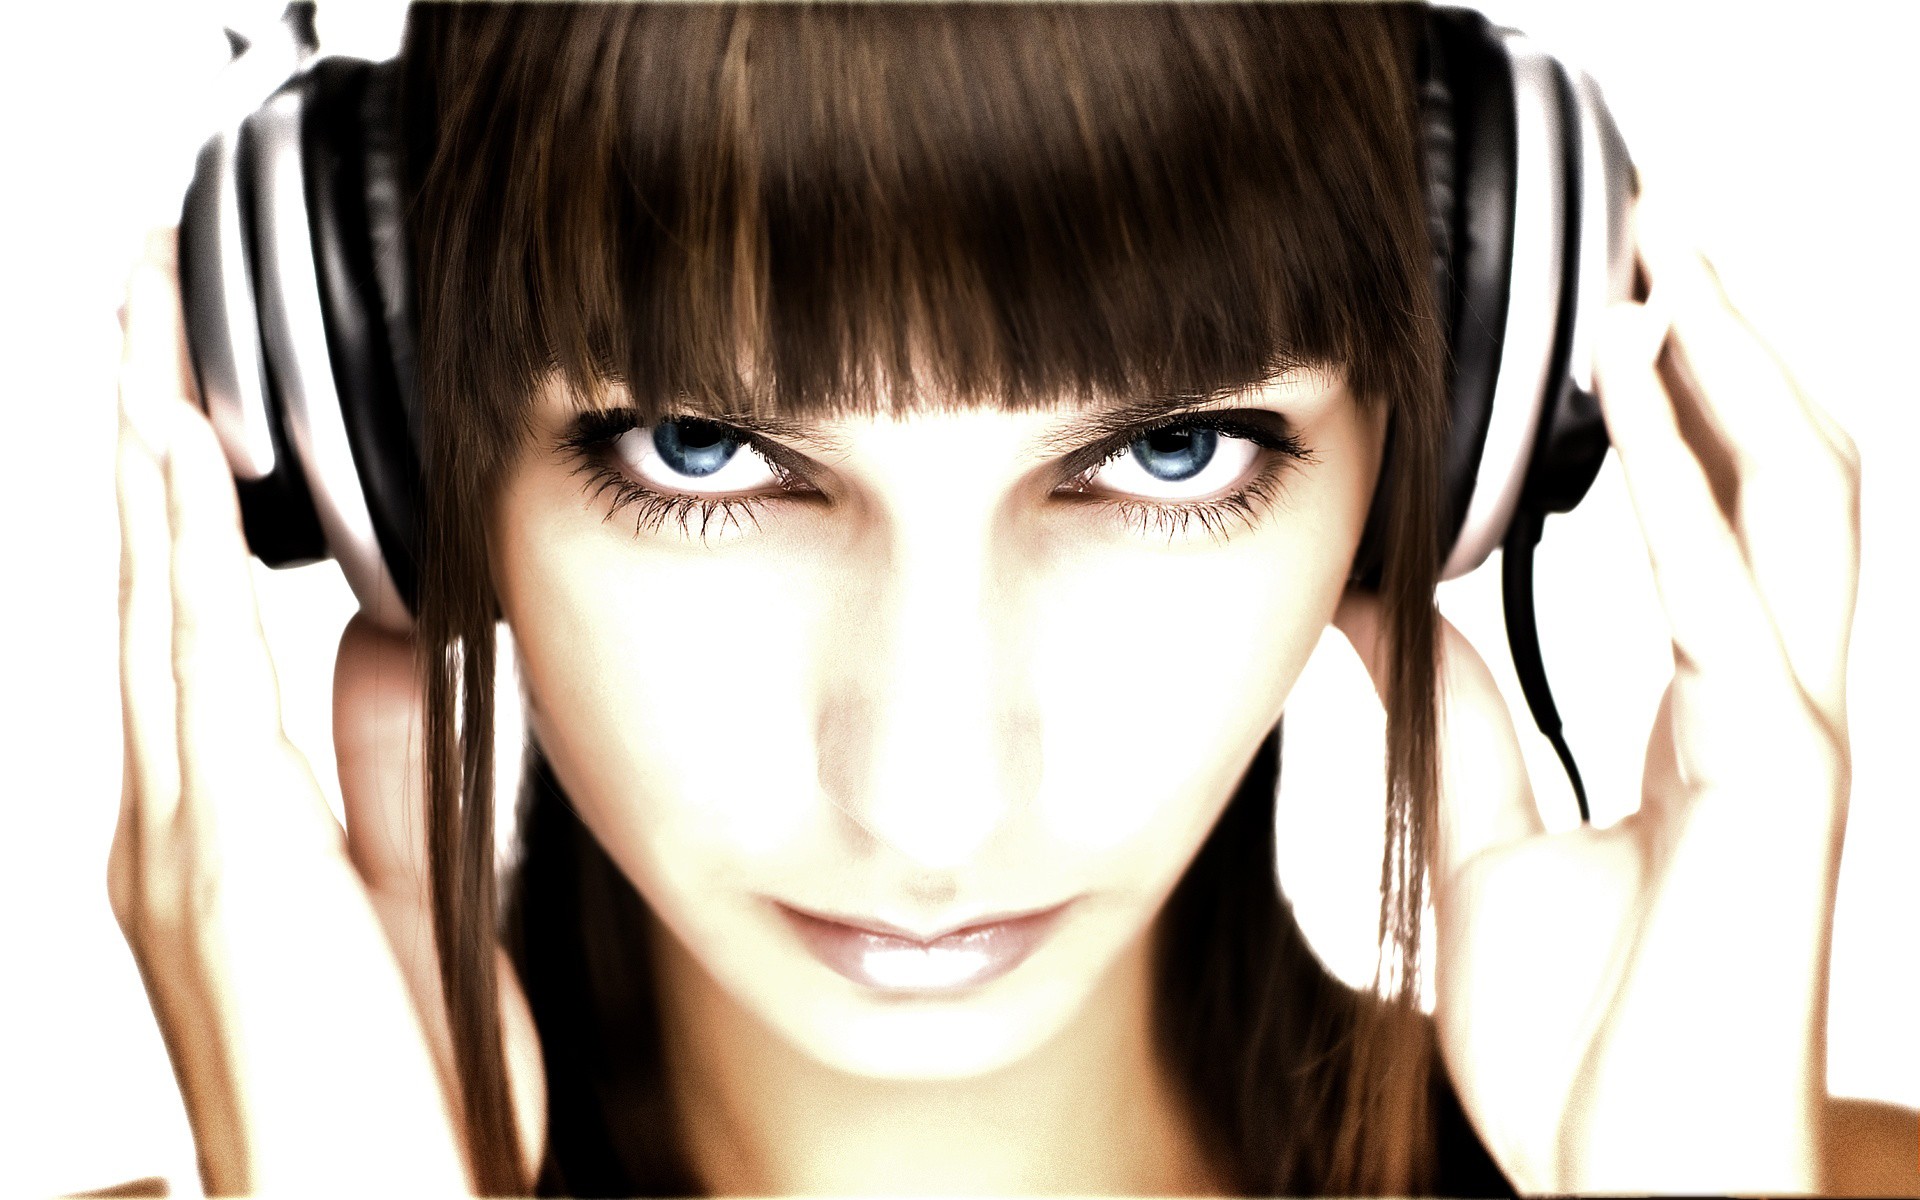 headphones, eyes - desktop wallpaper